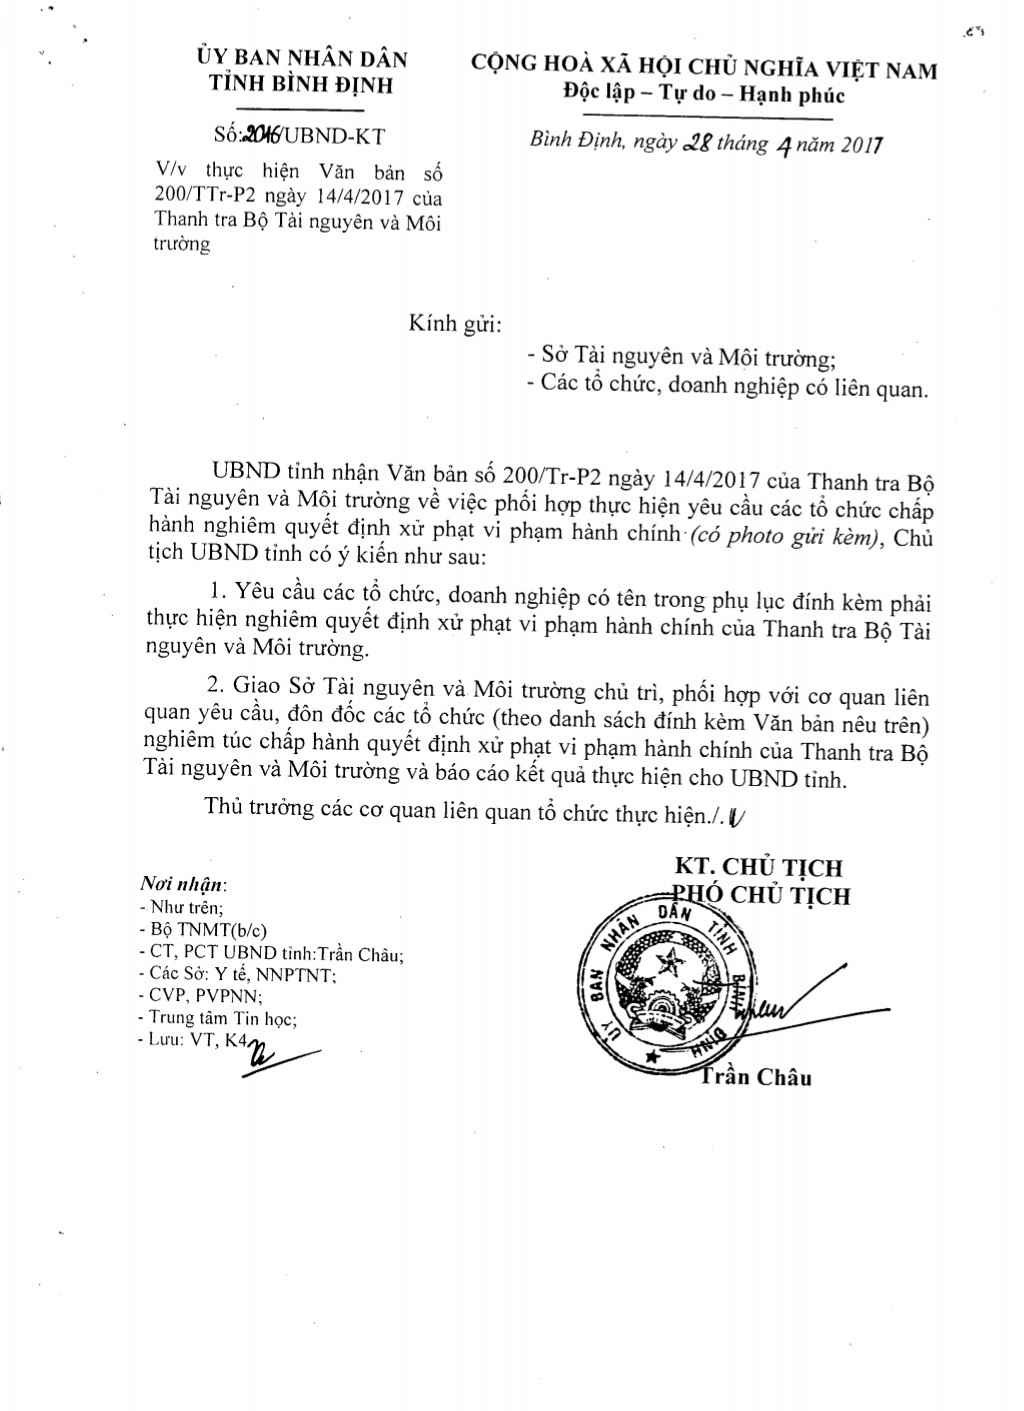 Công văn 2016/UBND-KT ngày 28/4/2017 của UBND tỉnh Bình Định V/v thực hiện văn bản số 200/TTr-P2 ngày 14/4/2017 của Thanh tra Bộ TN&MT